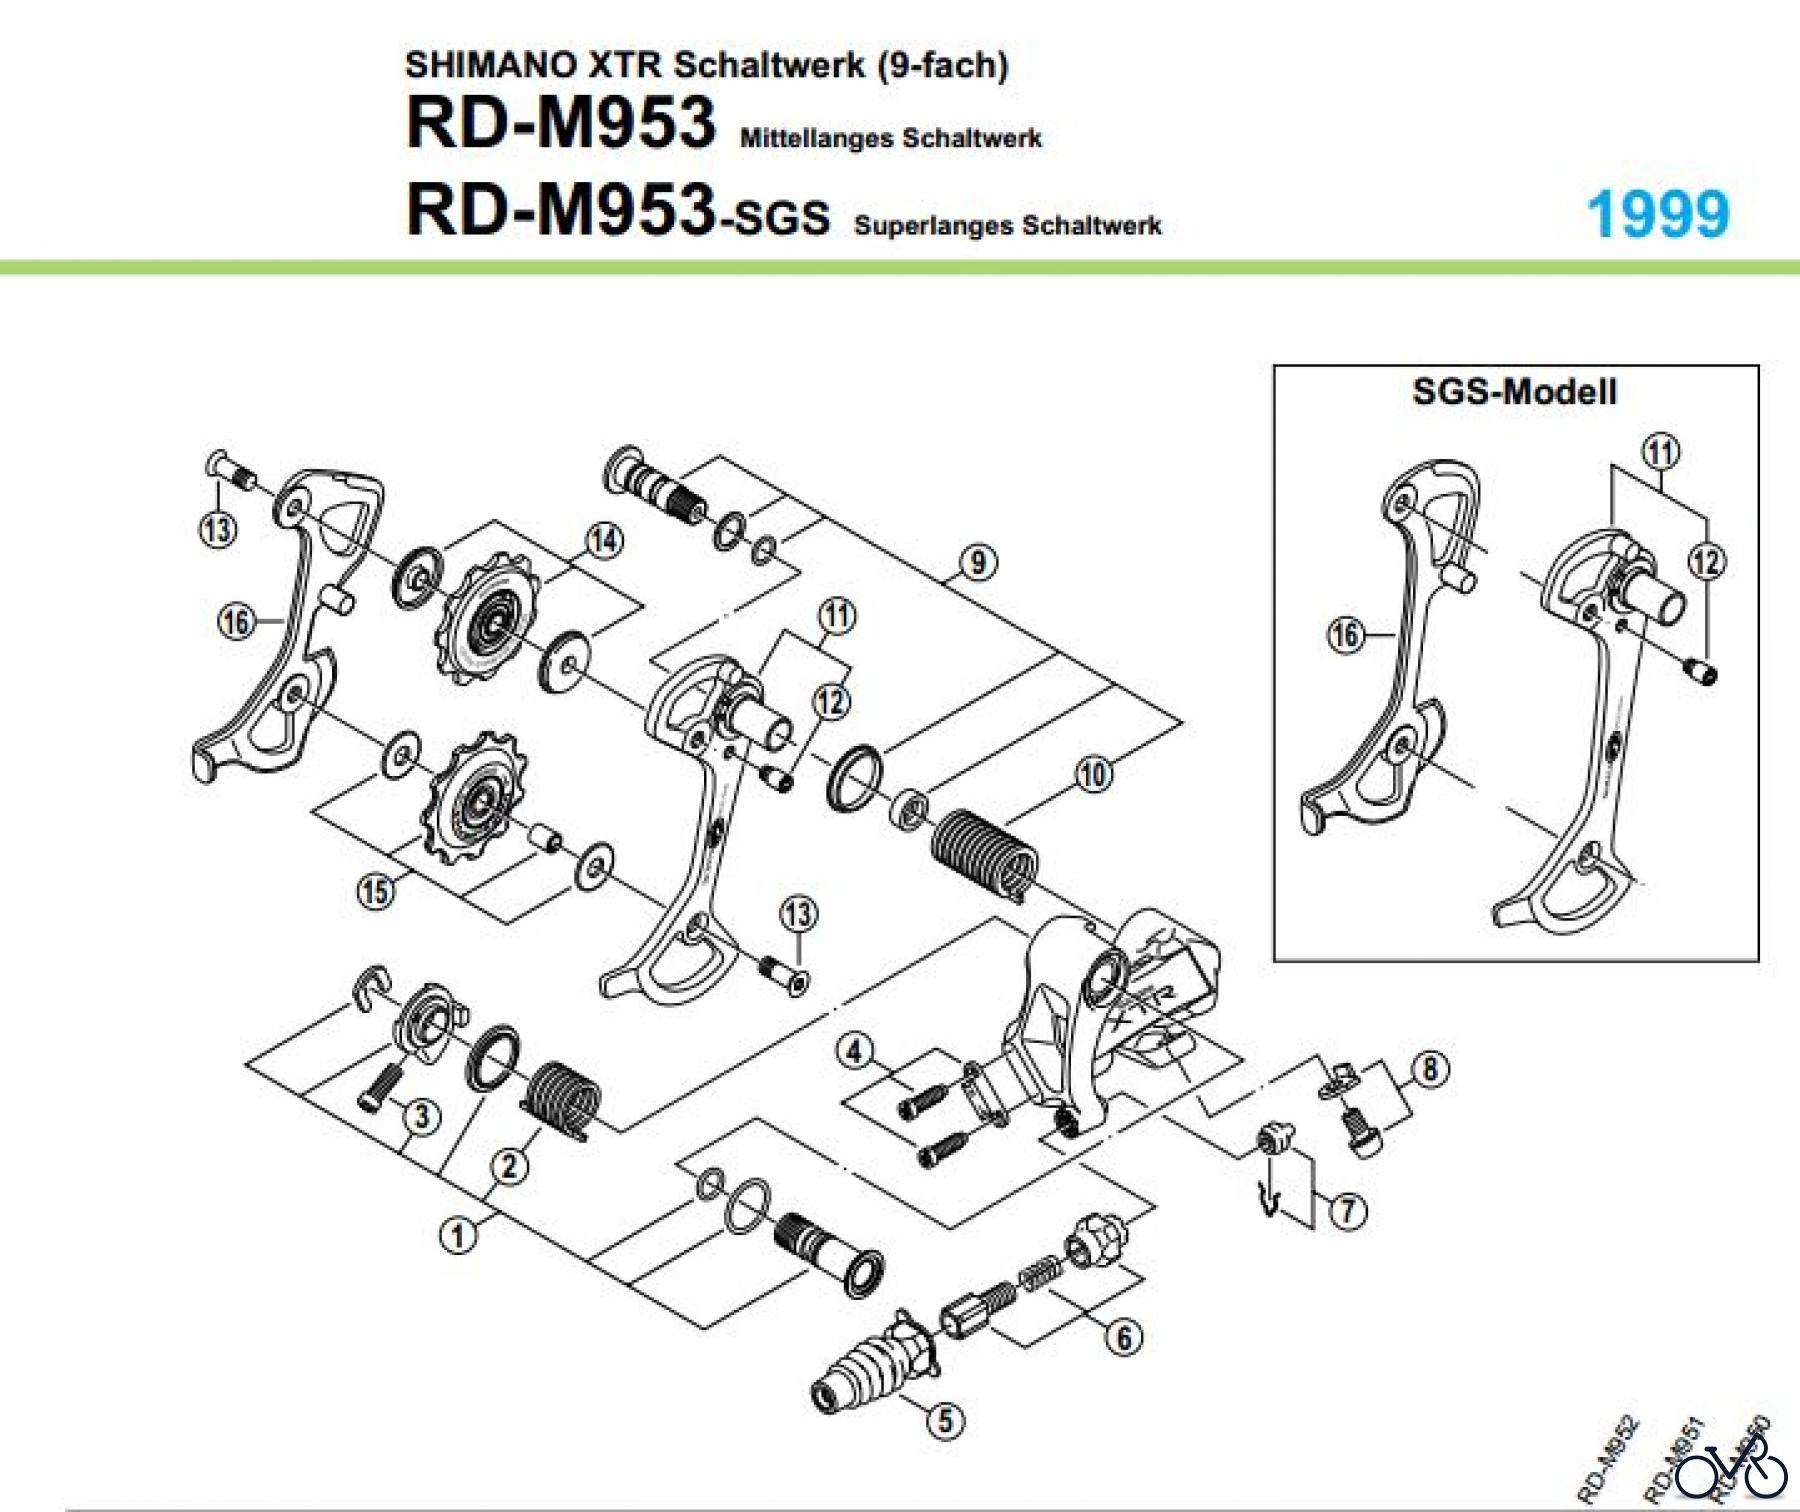  Shimano RD Rear Derailleur - Schaltwerk RD-M953-99